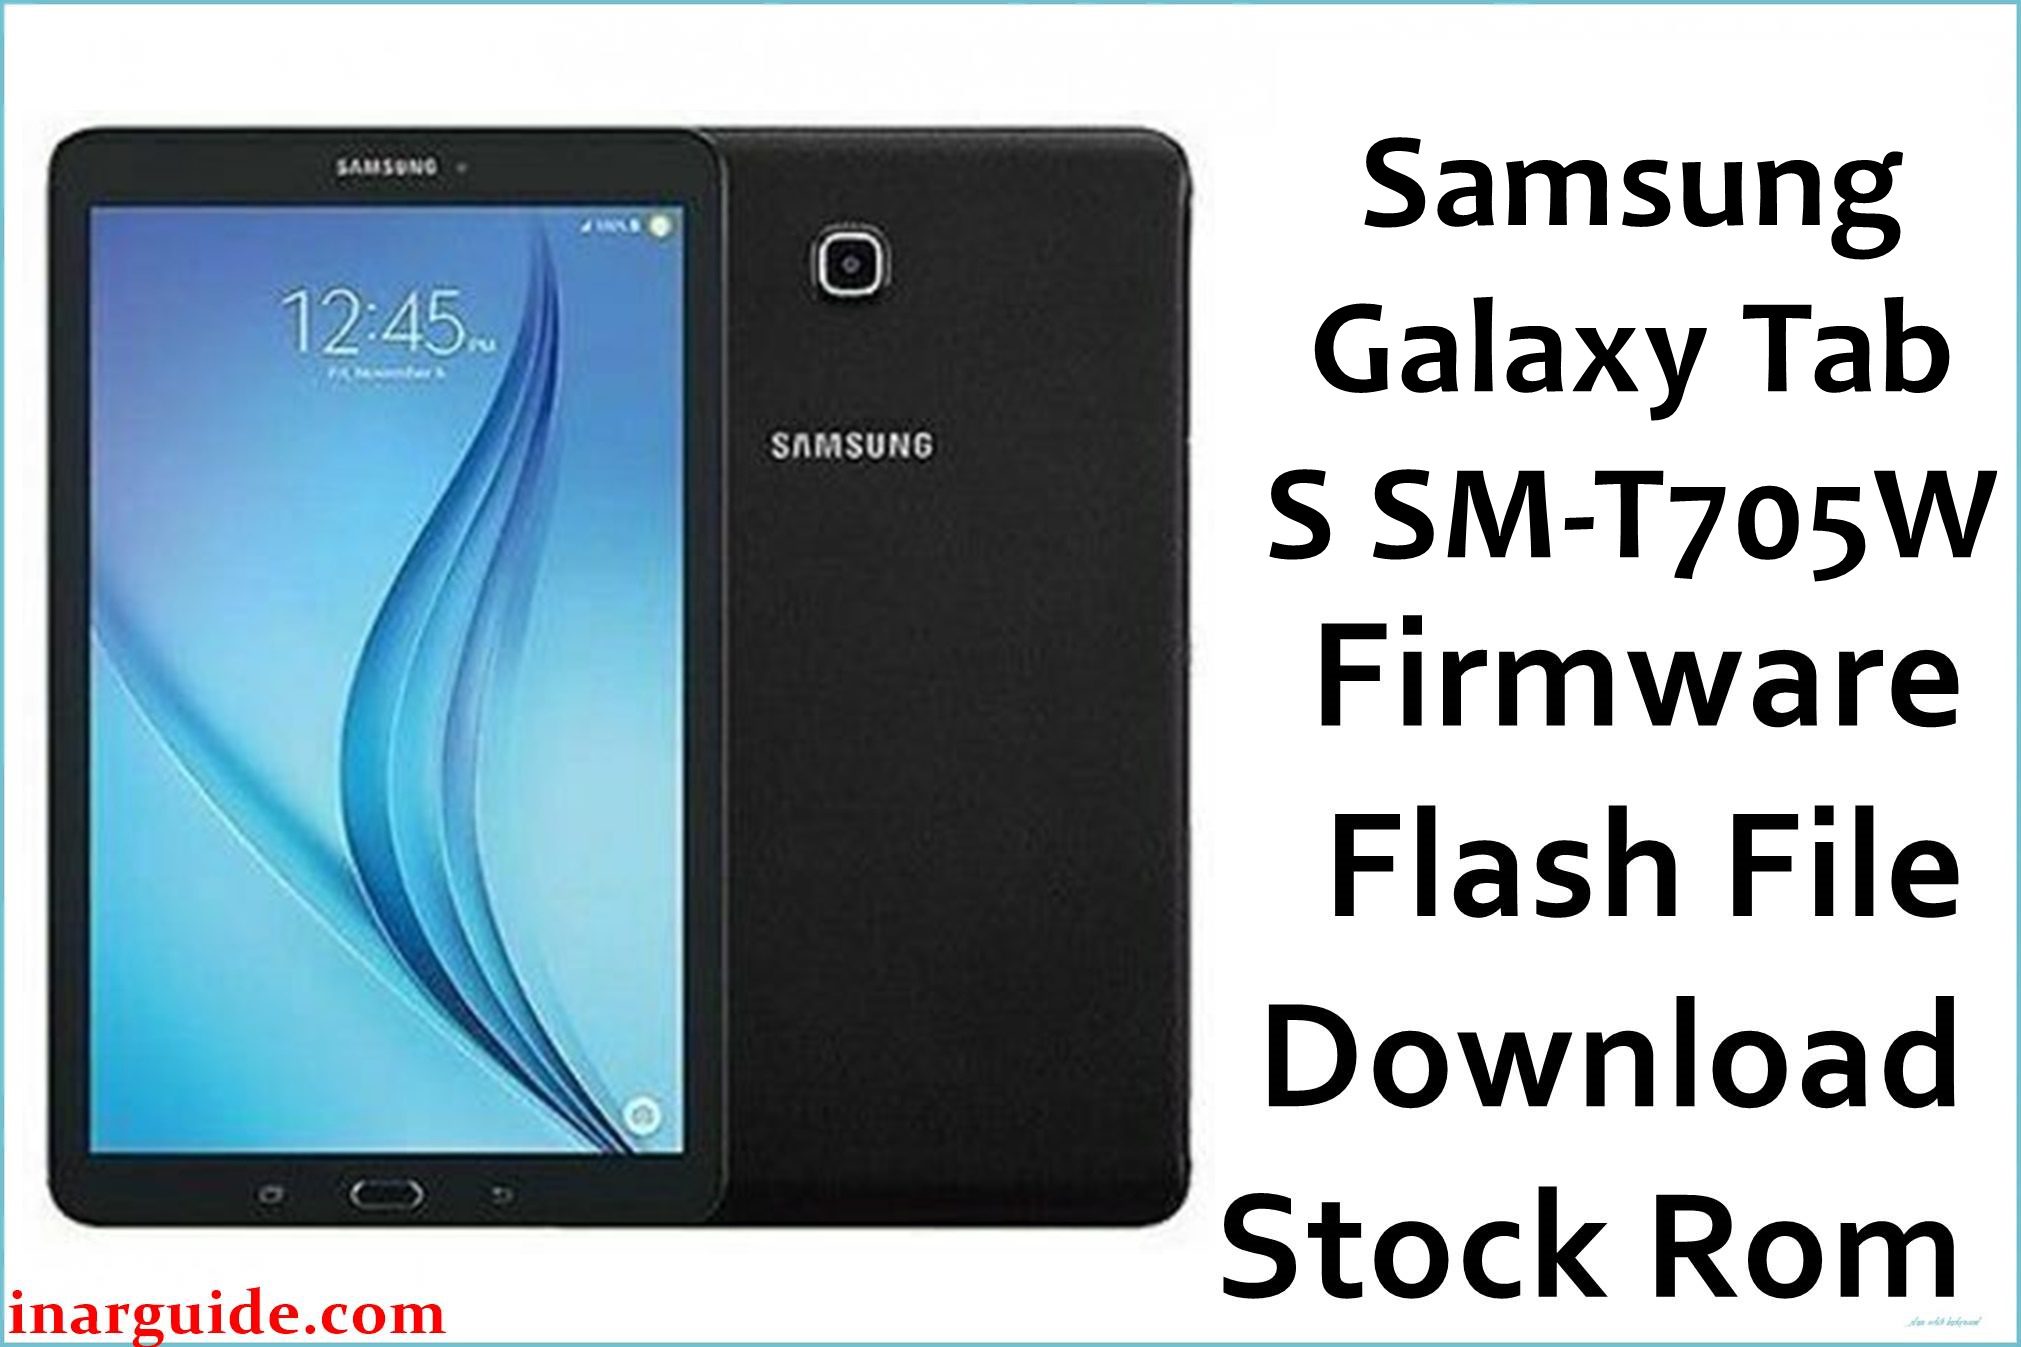 Samsung Galaxy Tab S SM T705W